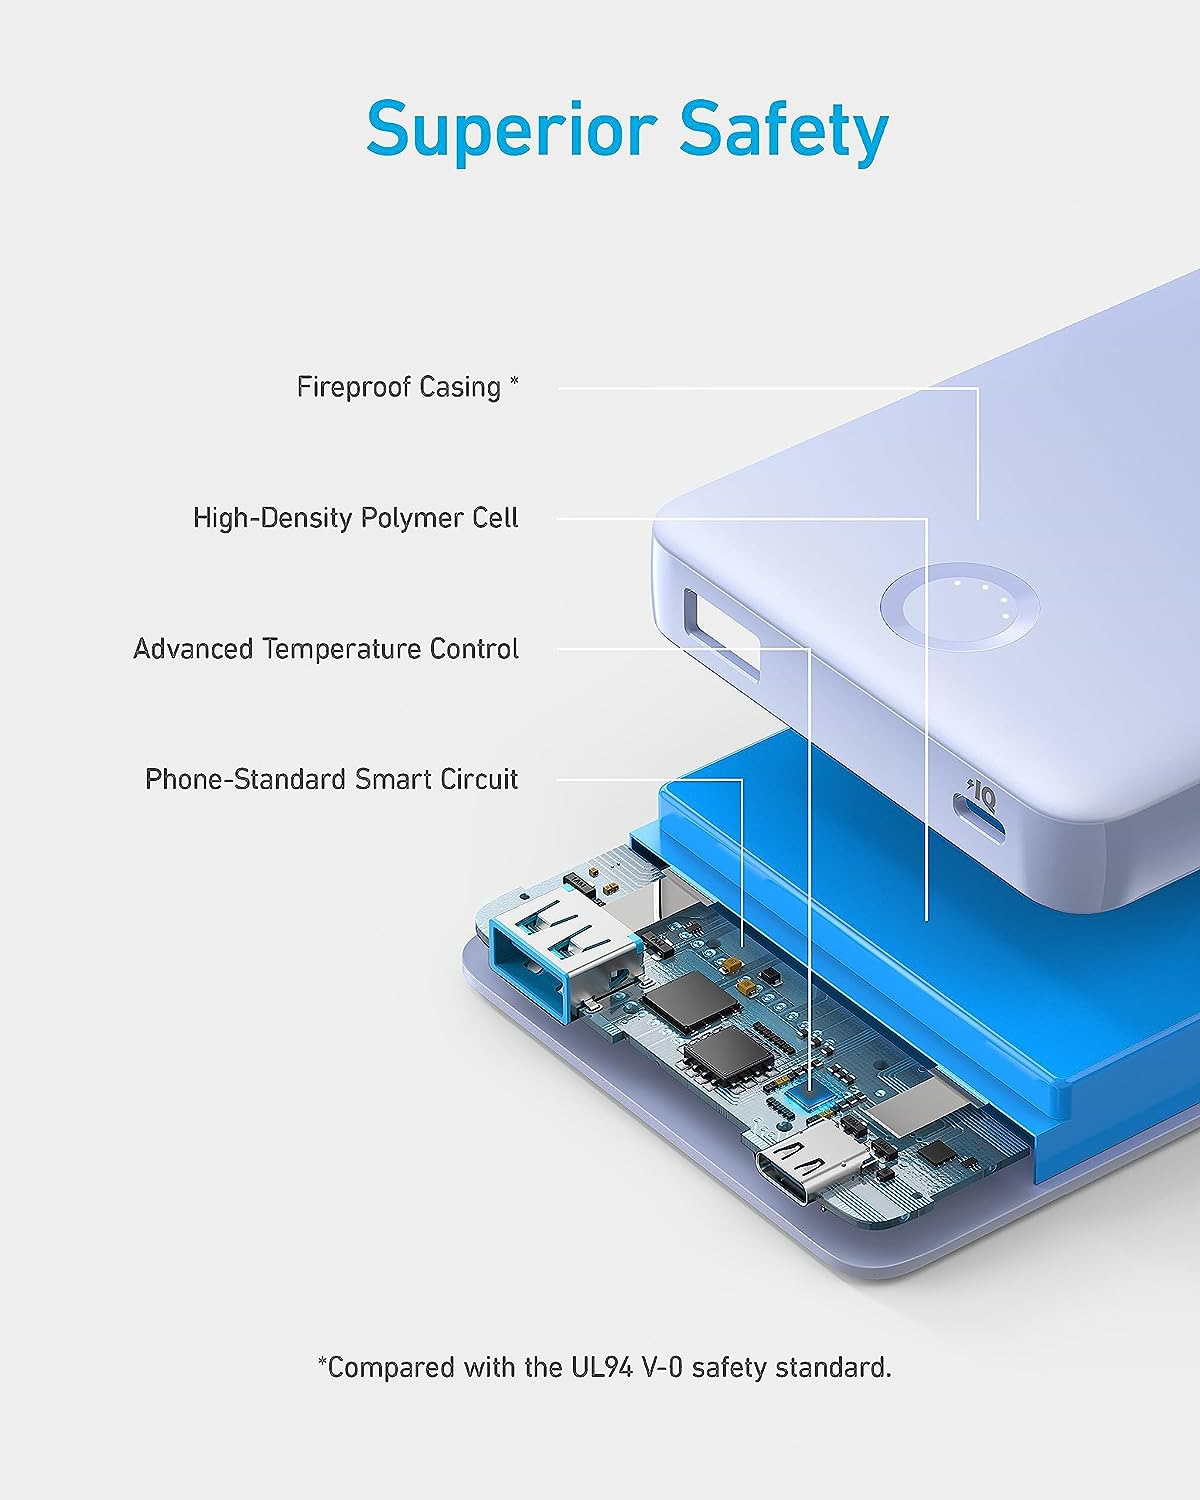 סוללת גיבוי Anker 323 Power Bank A1334 10,000mAh USB-C - צבע לבן 18 חודשים אחריות ע"י היבואן הרשמי  לעולם לא נגמר הכוח קיבולת 10,000mAh מאפשרת לבנק הכוח הזה לטעון את האייפון 14 שלך פעמיים ואת האייפד מיני 5 שלך עד פי 1.3.   בטוח במיוחד לשימוש עם מעטפת חסינת אש, תא פולימר בצפיפות גבוהה, מעגל חכם ובקרת טמפרטורה, בנק הכוח הזה מספק הגנה אמינה בזמן טעינת המכשירים שלך.  טעינה כפולה יציאת ה-USB-C תומכת בטעינה מהירה דו כיוונית לנוחות נוספת. עם היכולת להטעין שני מכשירים בו-זמנית עד 12W מקסימום, בנק הכוח הזה מושלם למי שנמצא בדרכים עם מספר מכשירים.  מפרט טכני: סוללה קיבולת סוללה 10,000mAh  חיבורים מחבר כניסה 12W–USB X 1 מחבר יציאה 15W – USB-C X 1 מחבר יציאה – USB-A X 1 מגיע עם כבל טעינה TYPE C  באריזה Anker 323 Power Bank (PowerCore PIQ) כבל USB-A ל-USB-C מדריך קבלת פנים 18 חודשי אחריות  אחריות: לבדיקת תוקף אחריות ואיתור נקודת שירות ניתן לפנות למוקד השירות הטלפוני בטלפון 08-6852114 או לאתר האינטרנט של החברה לחצו כאן